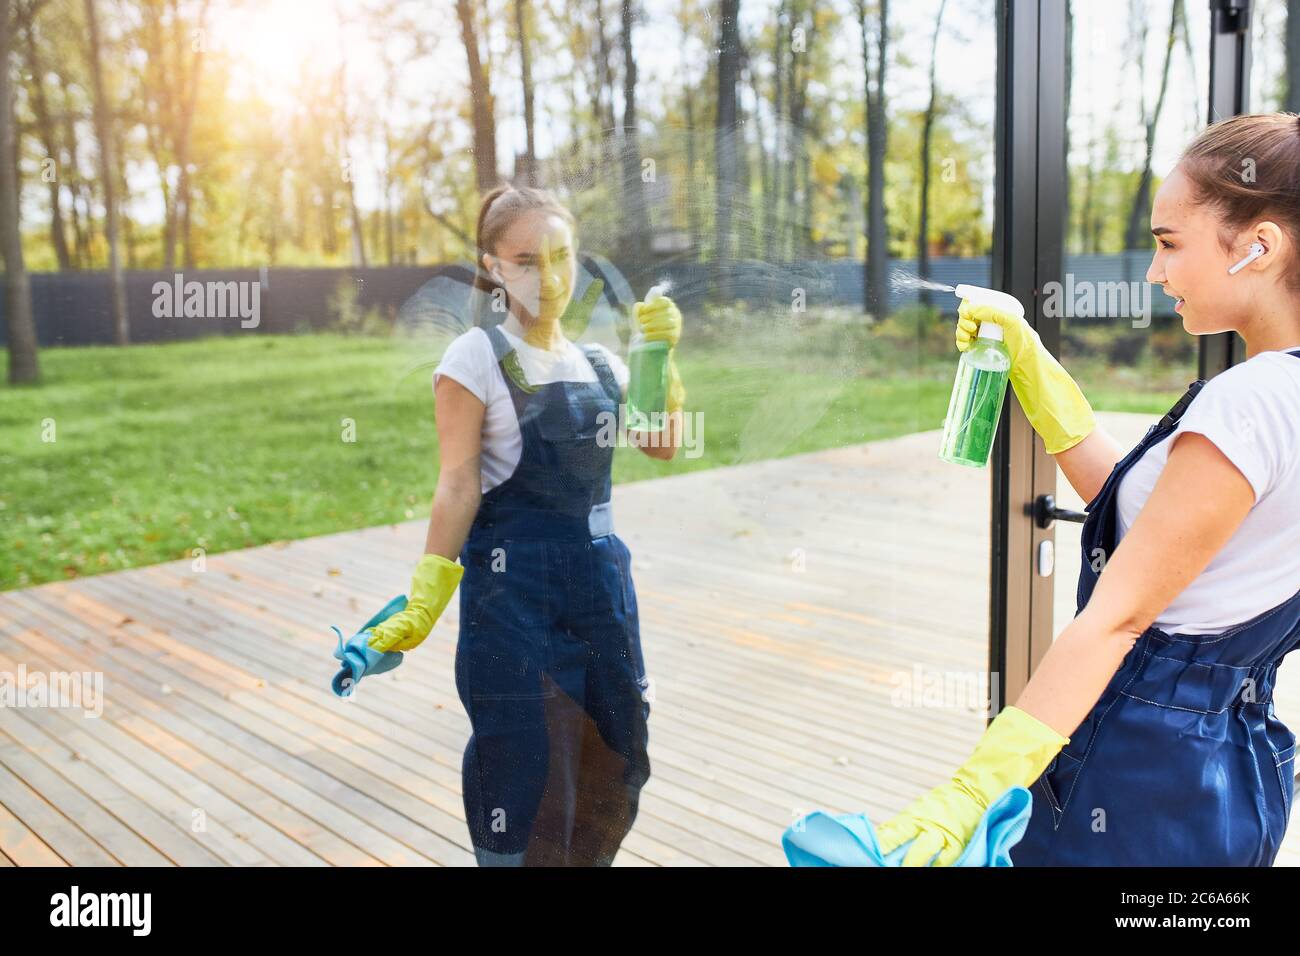 Reinigung Service Mädchen in Uniform tragen gelbe Schutzhandschuhe Waschen Fenster im Freien, Blick auf die Reflexion von sich selbst im Glas Stockfoto